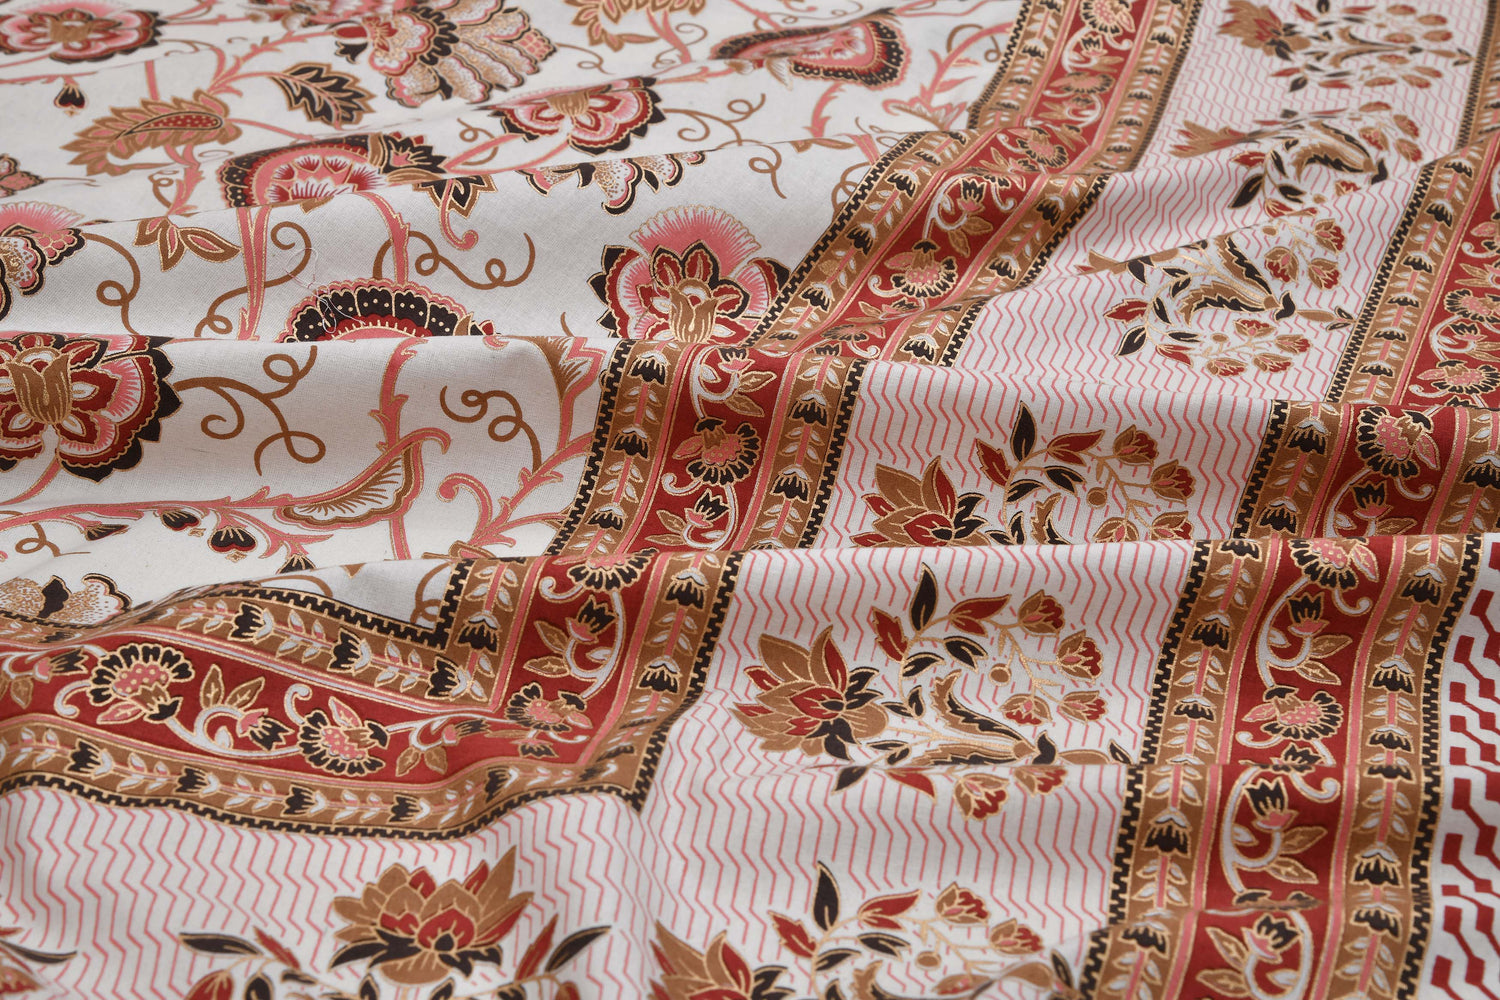 Ethnic Prints Bedsheet- Double Bed -Golden Pink Bouquet